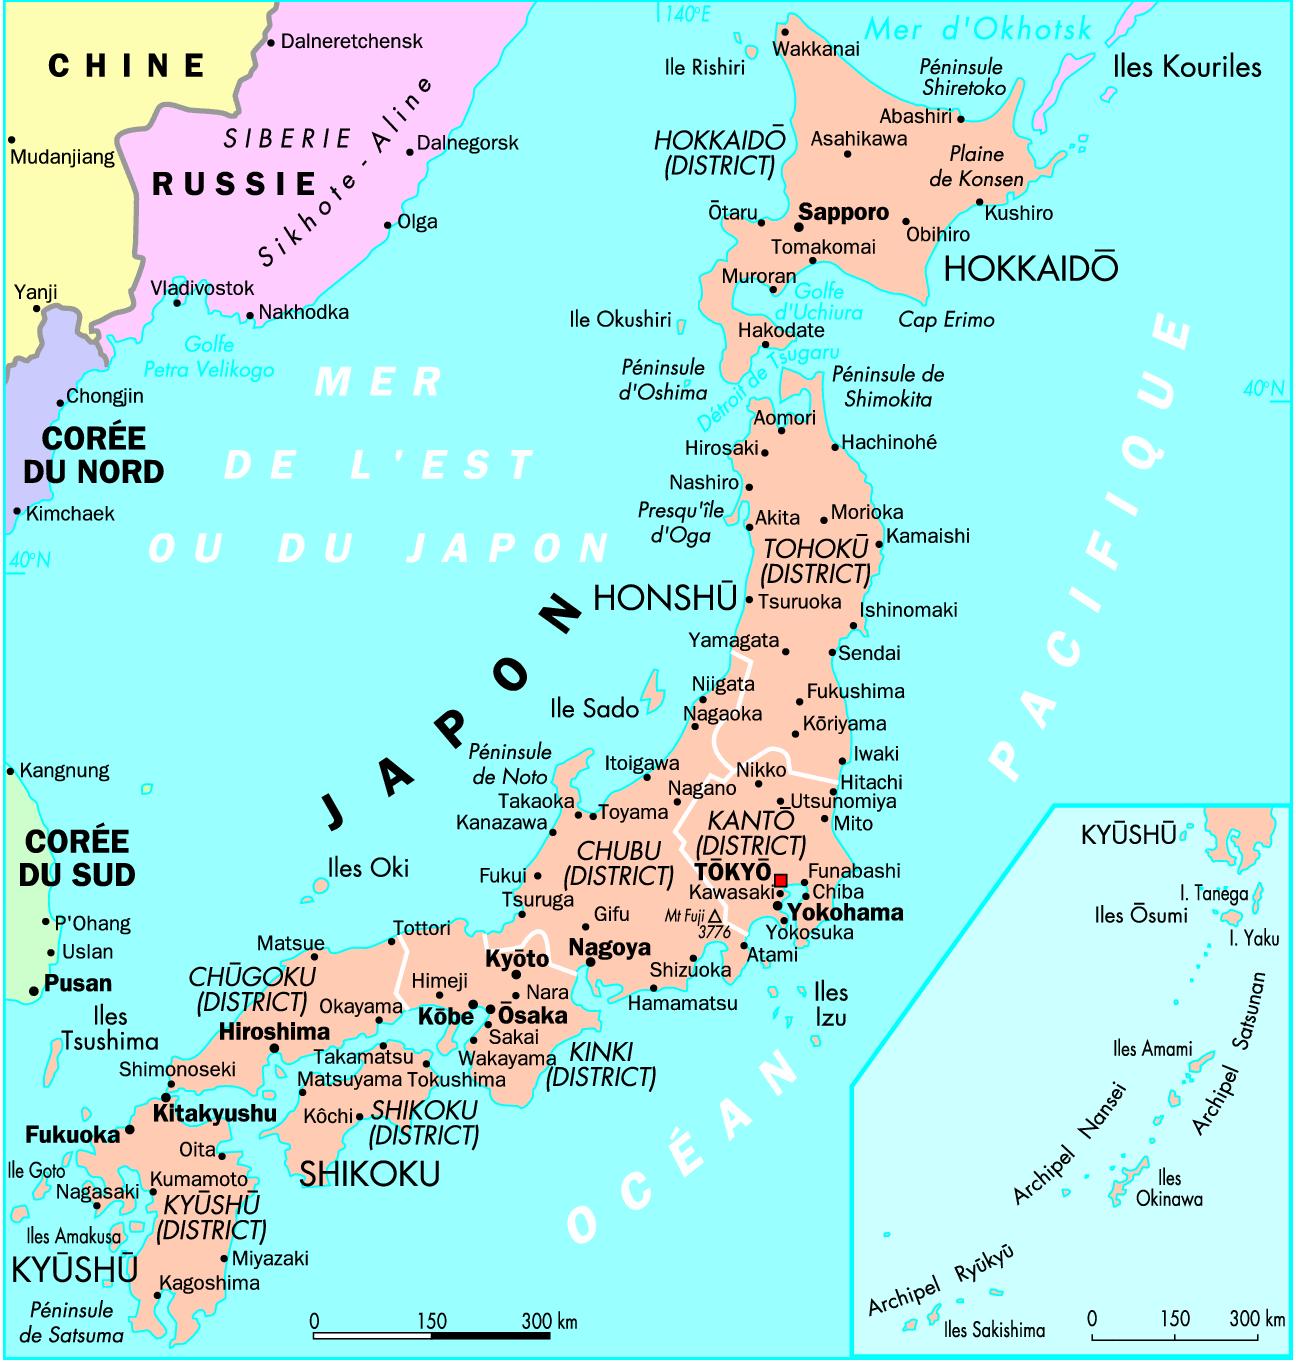 Les régions du Japon